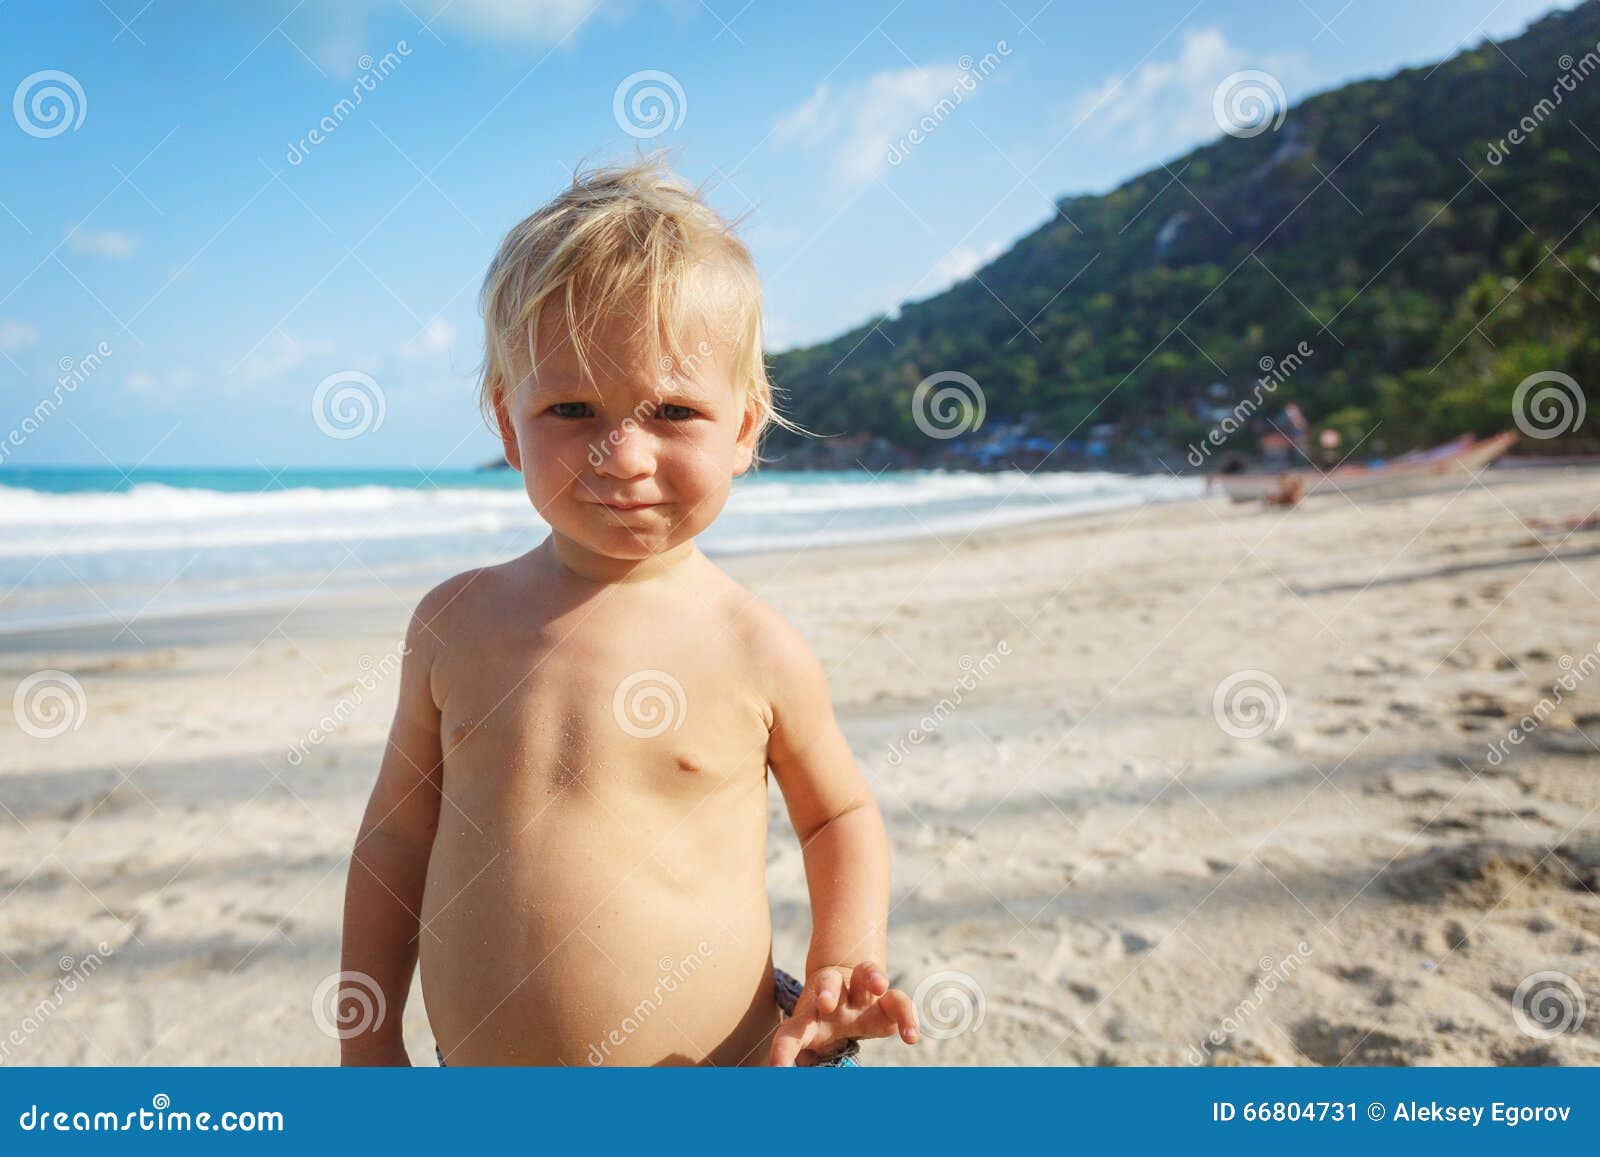 нудистский пляж с голыми детьми фото 11